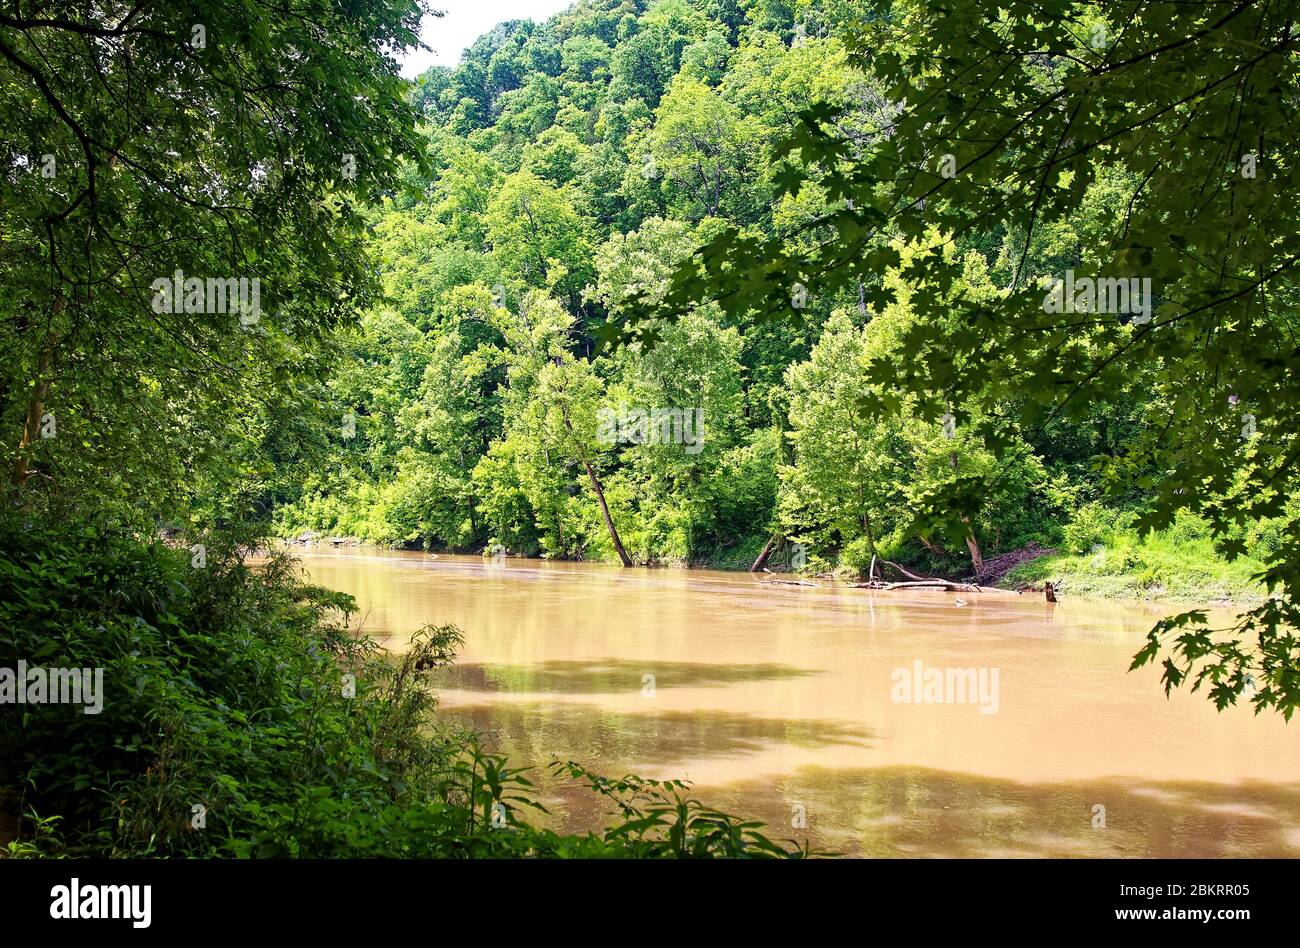 Green River, bezeichnet hervorragende Ressource Wasser, schlammig, Baum gesäumte Ufer, Natur, Mammoth Cave National Park; USA, Kentucky; Mammoth Cave; KY; spri Stockfoto